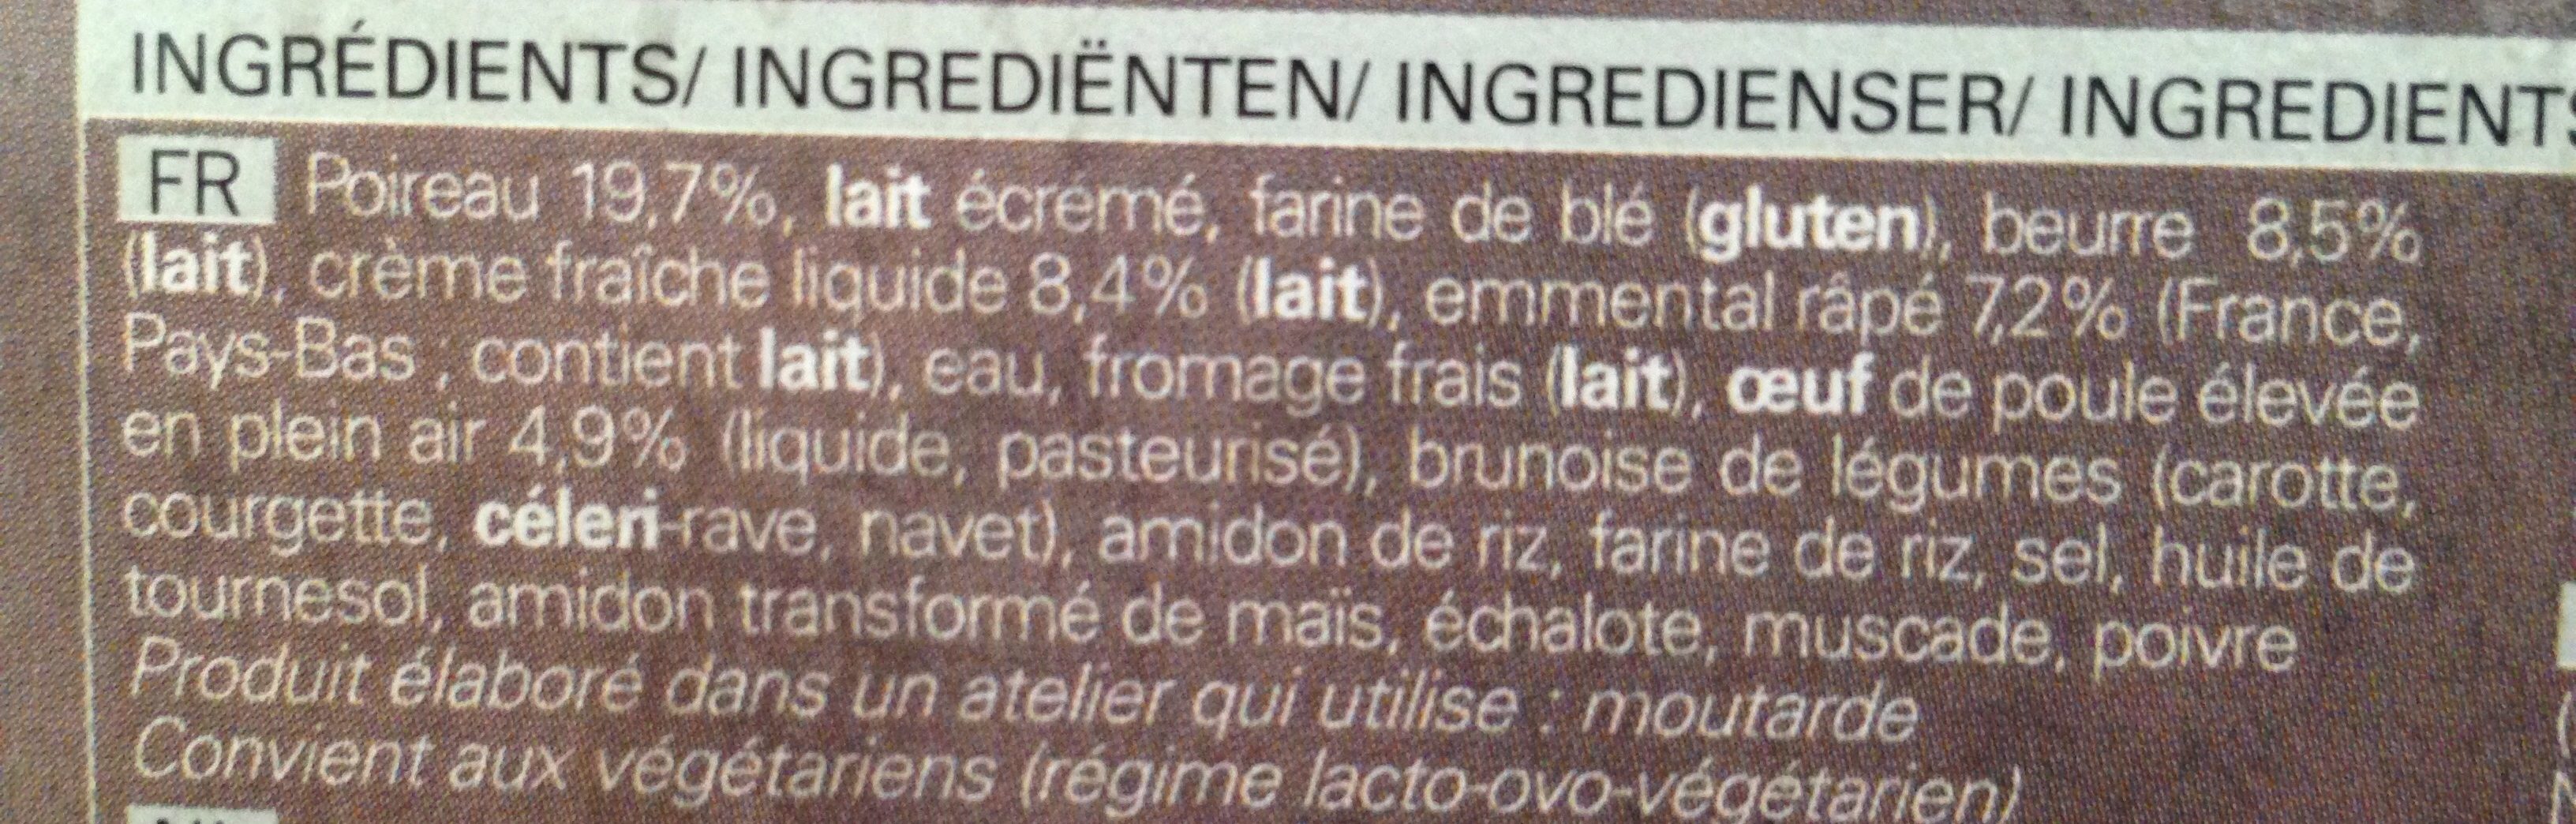 2 Tartes Aux Poireaux - Ingredients - fr